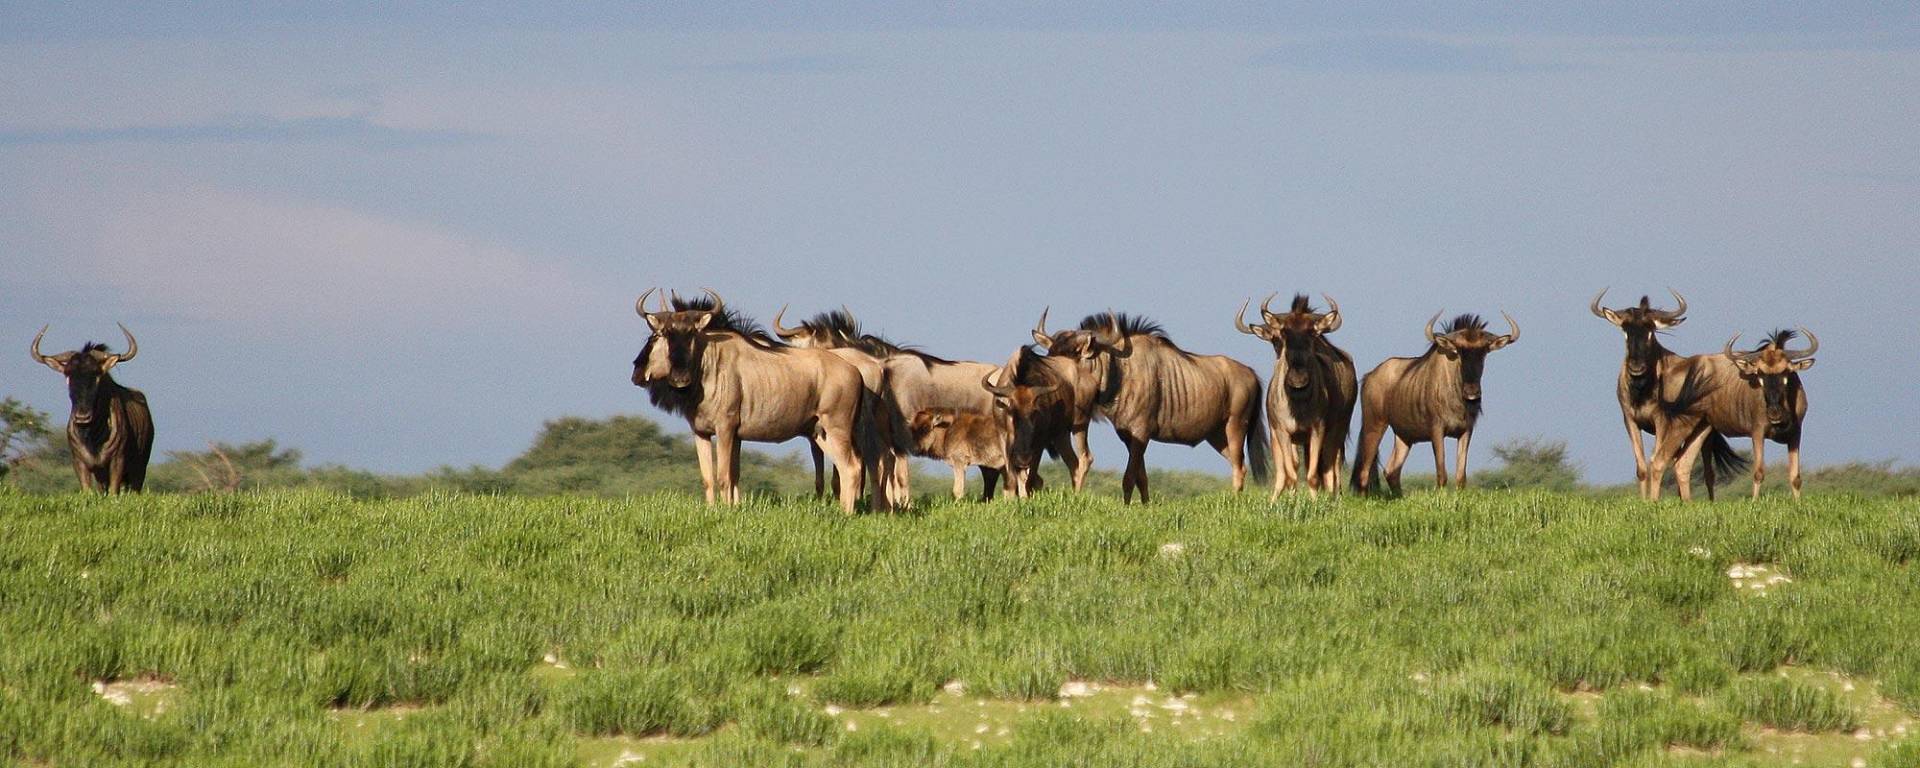 Wildebeest after rainy season at Kuzikus